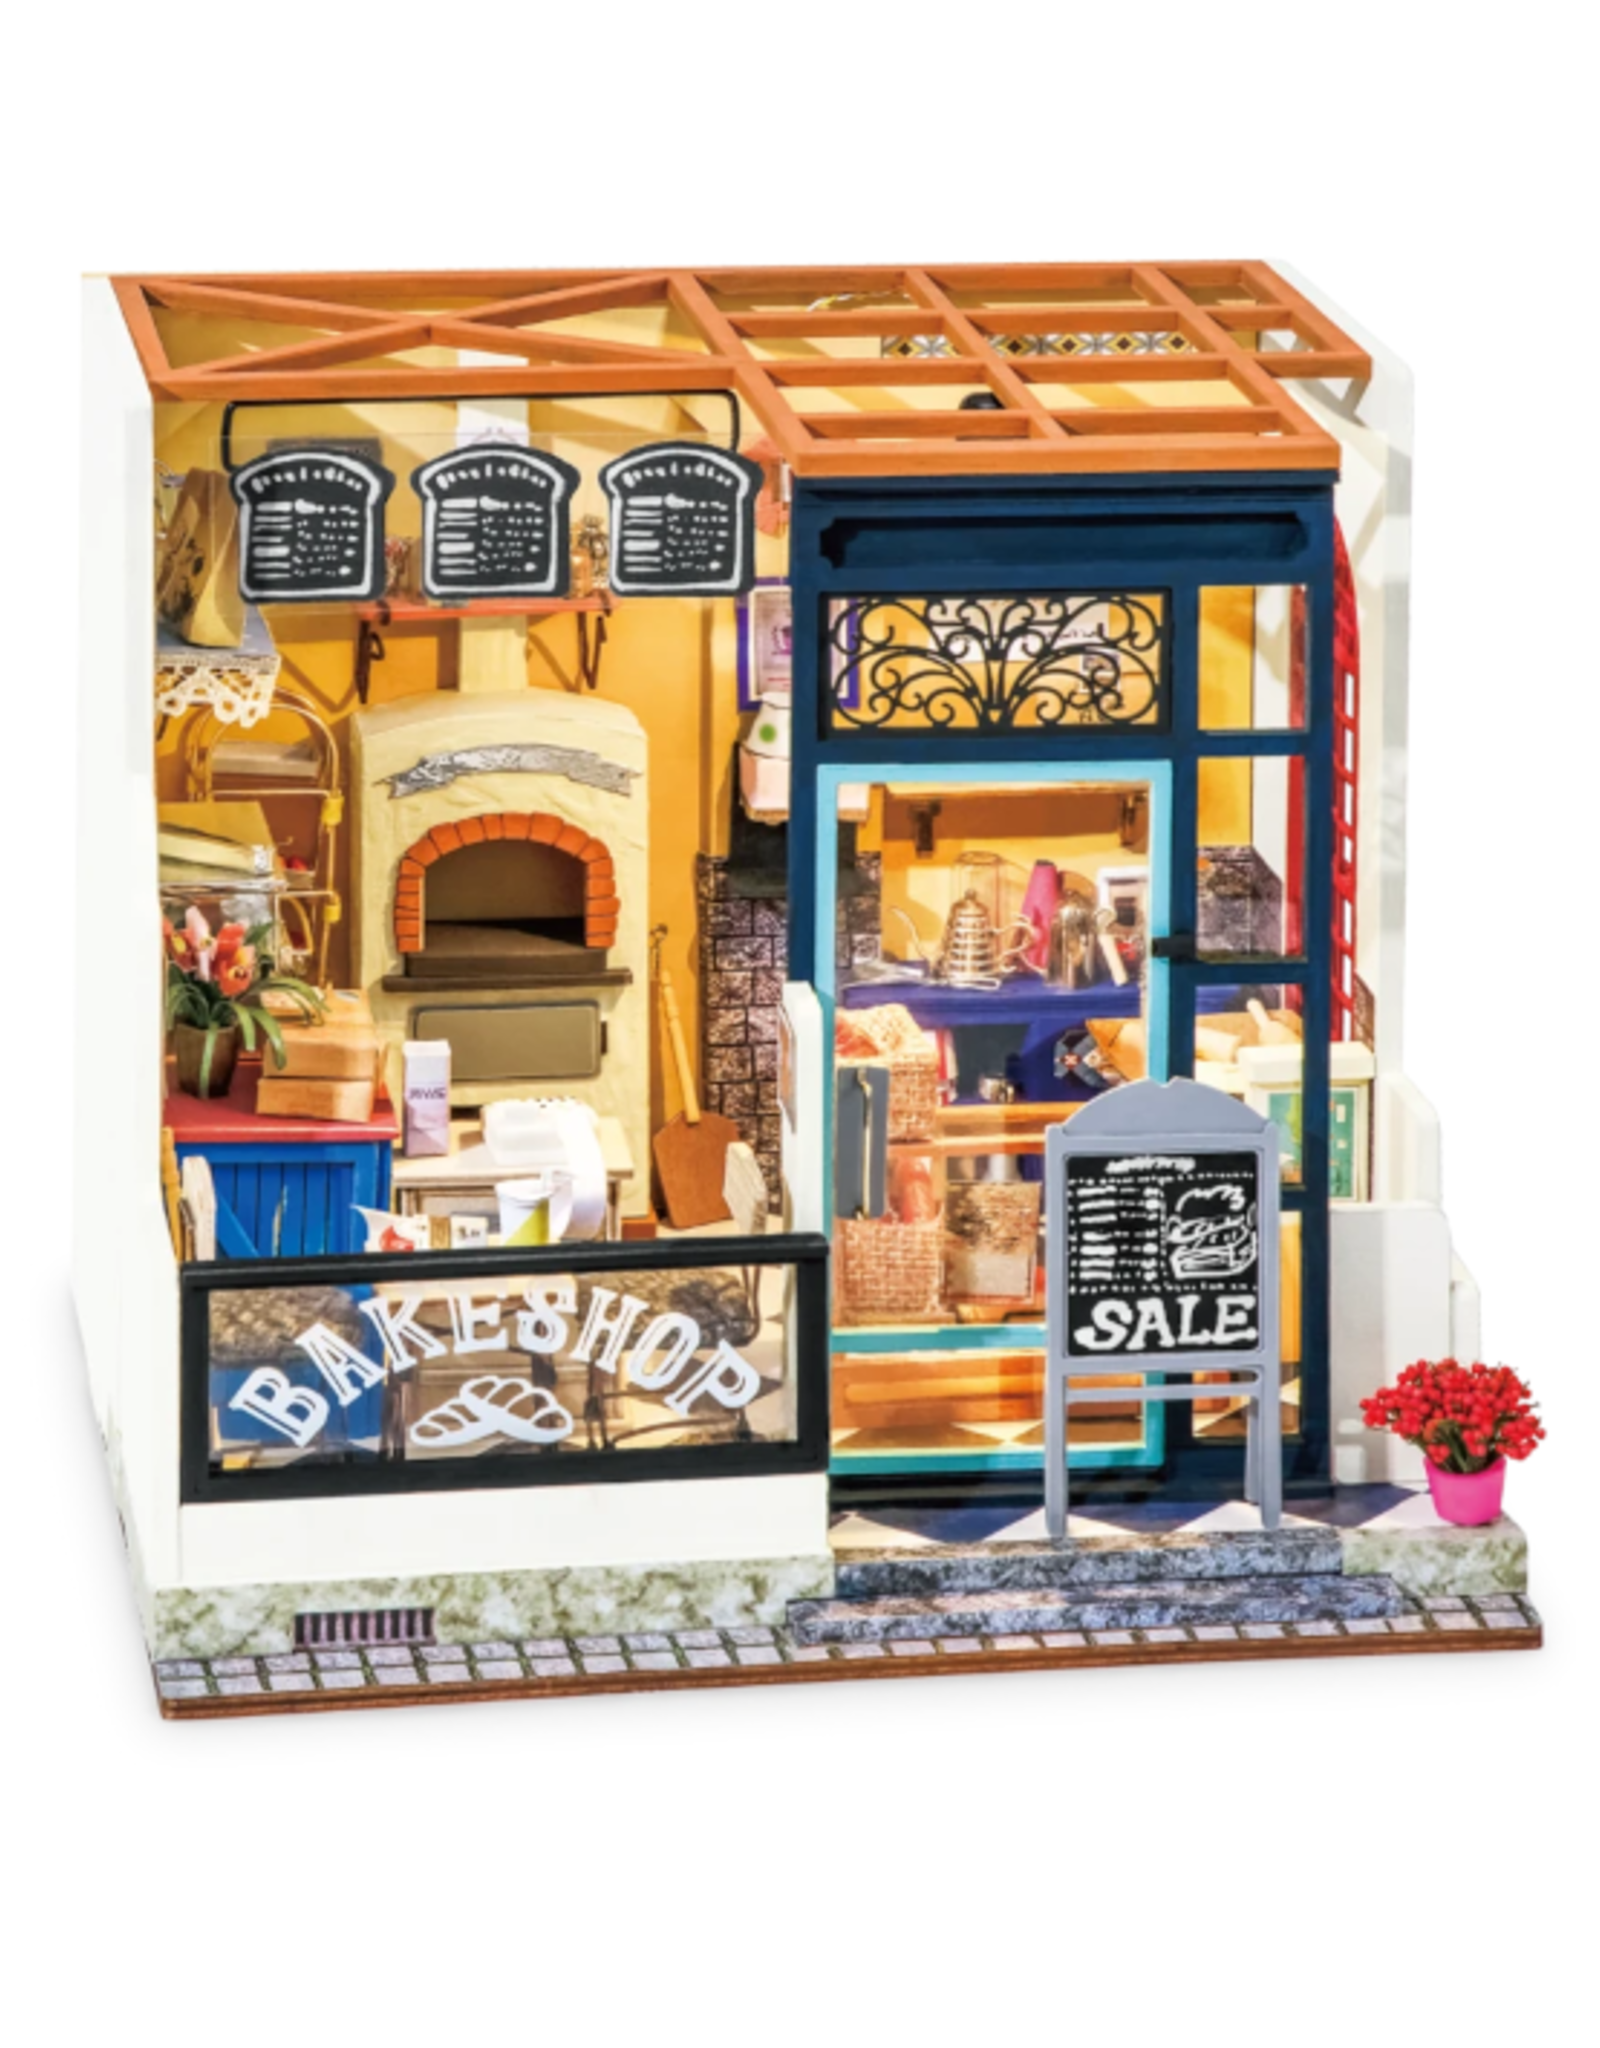 Hands Craft Hands Craft - DIY Miniature Dollhouse - Bake Shop